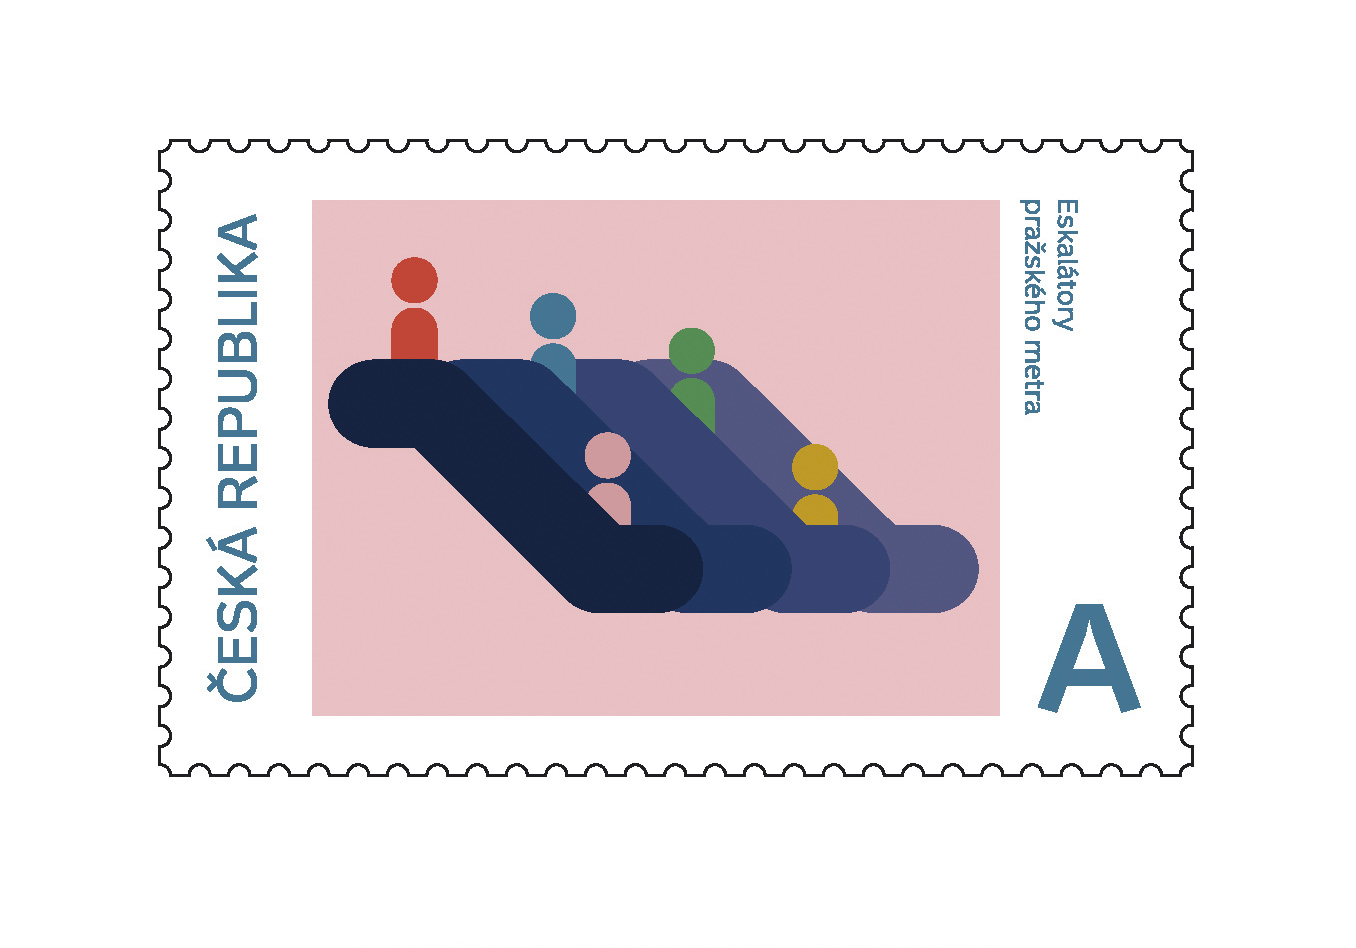 Série poštovních známek, FDC, razítko, přítisk<br> Národní kulturní identita<br> klauzurní práce | 1. ročník<br> G1A 01 2020/2021